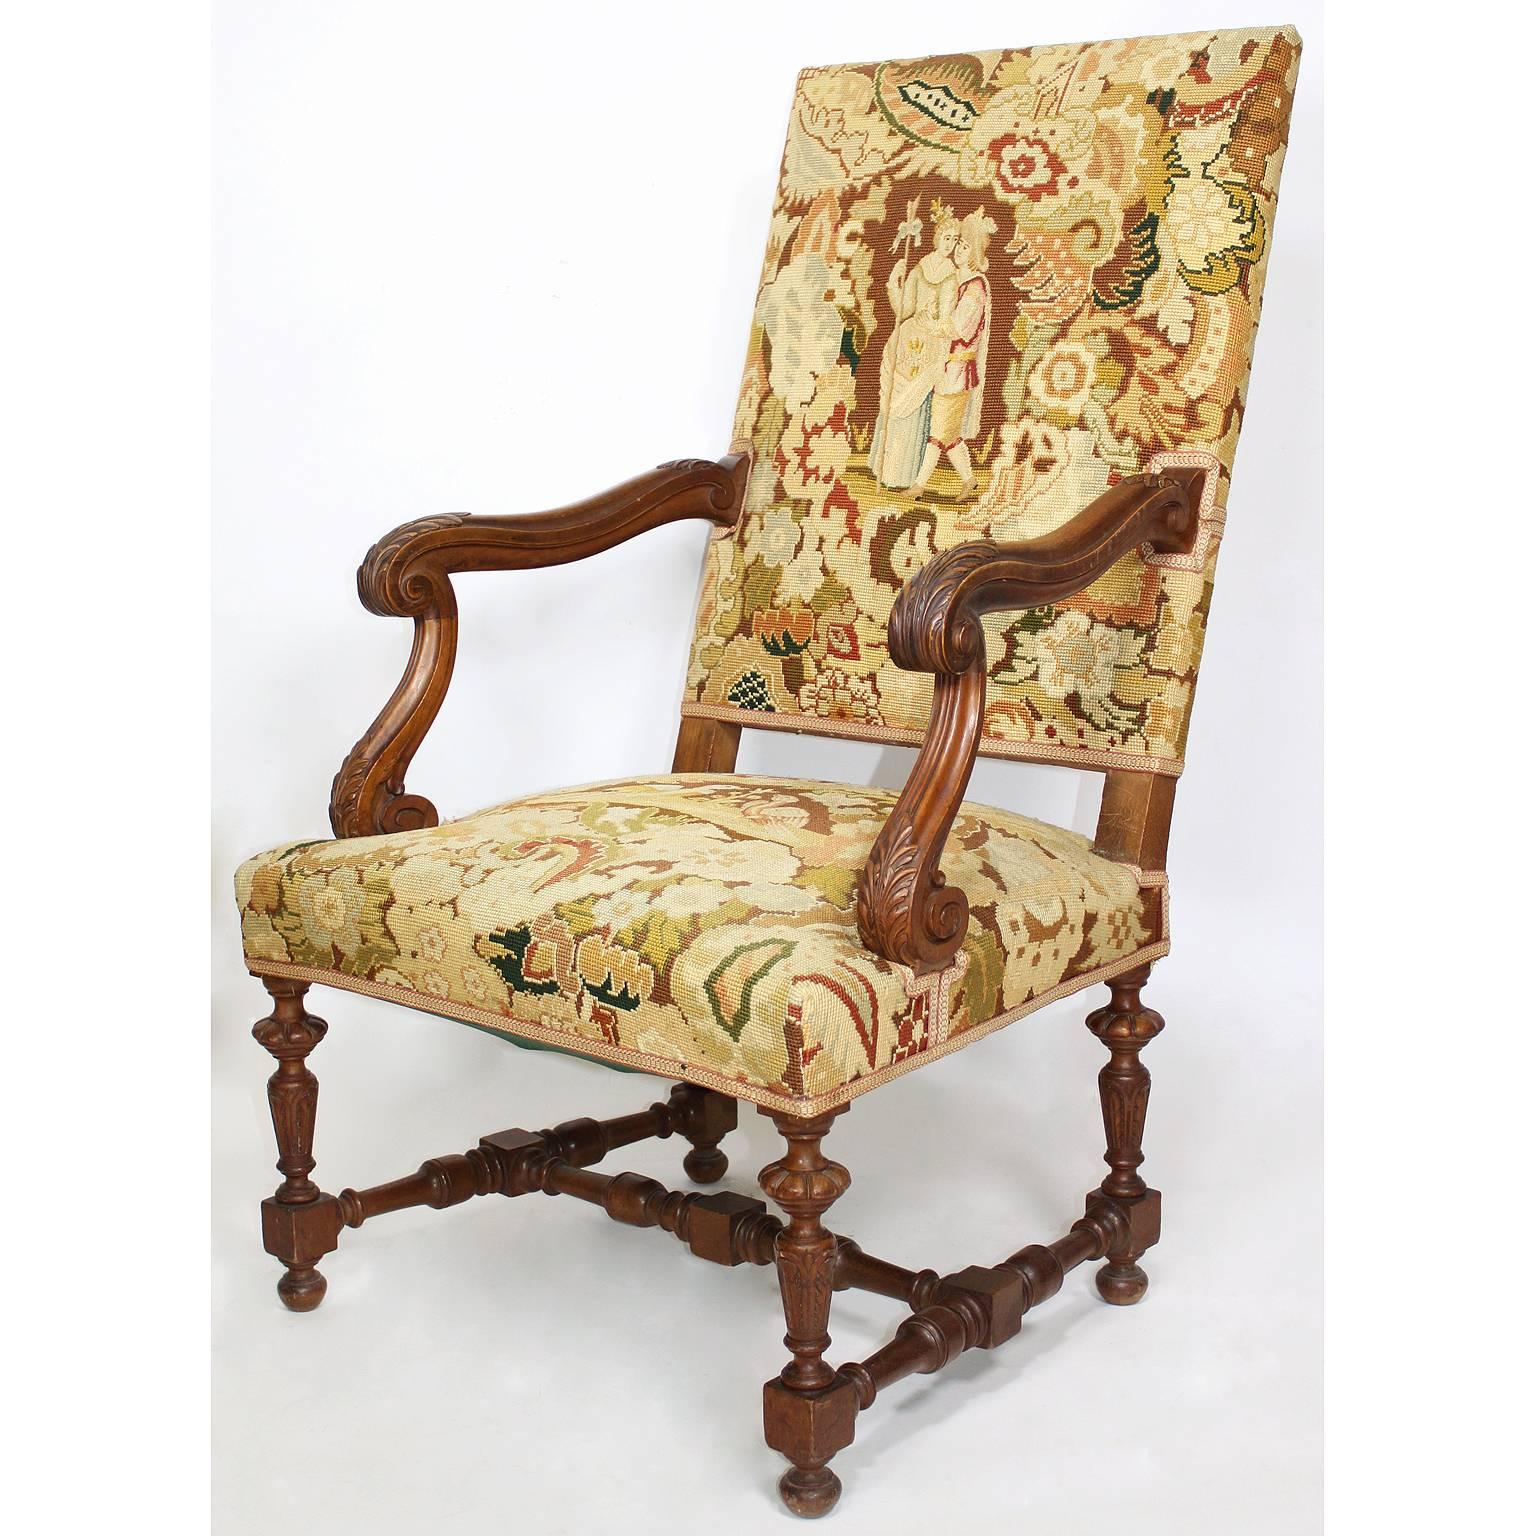 Paire de fauteuils de style baroque français du 19e au 20e siècle, en noyer sculpté et tapissés de points d'aiguille, avec accoudoirs sculptés et pieds cannelés. Les tapisseries représentent chacune des scènes de cour romantique parmi des arbres et